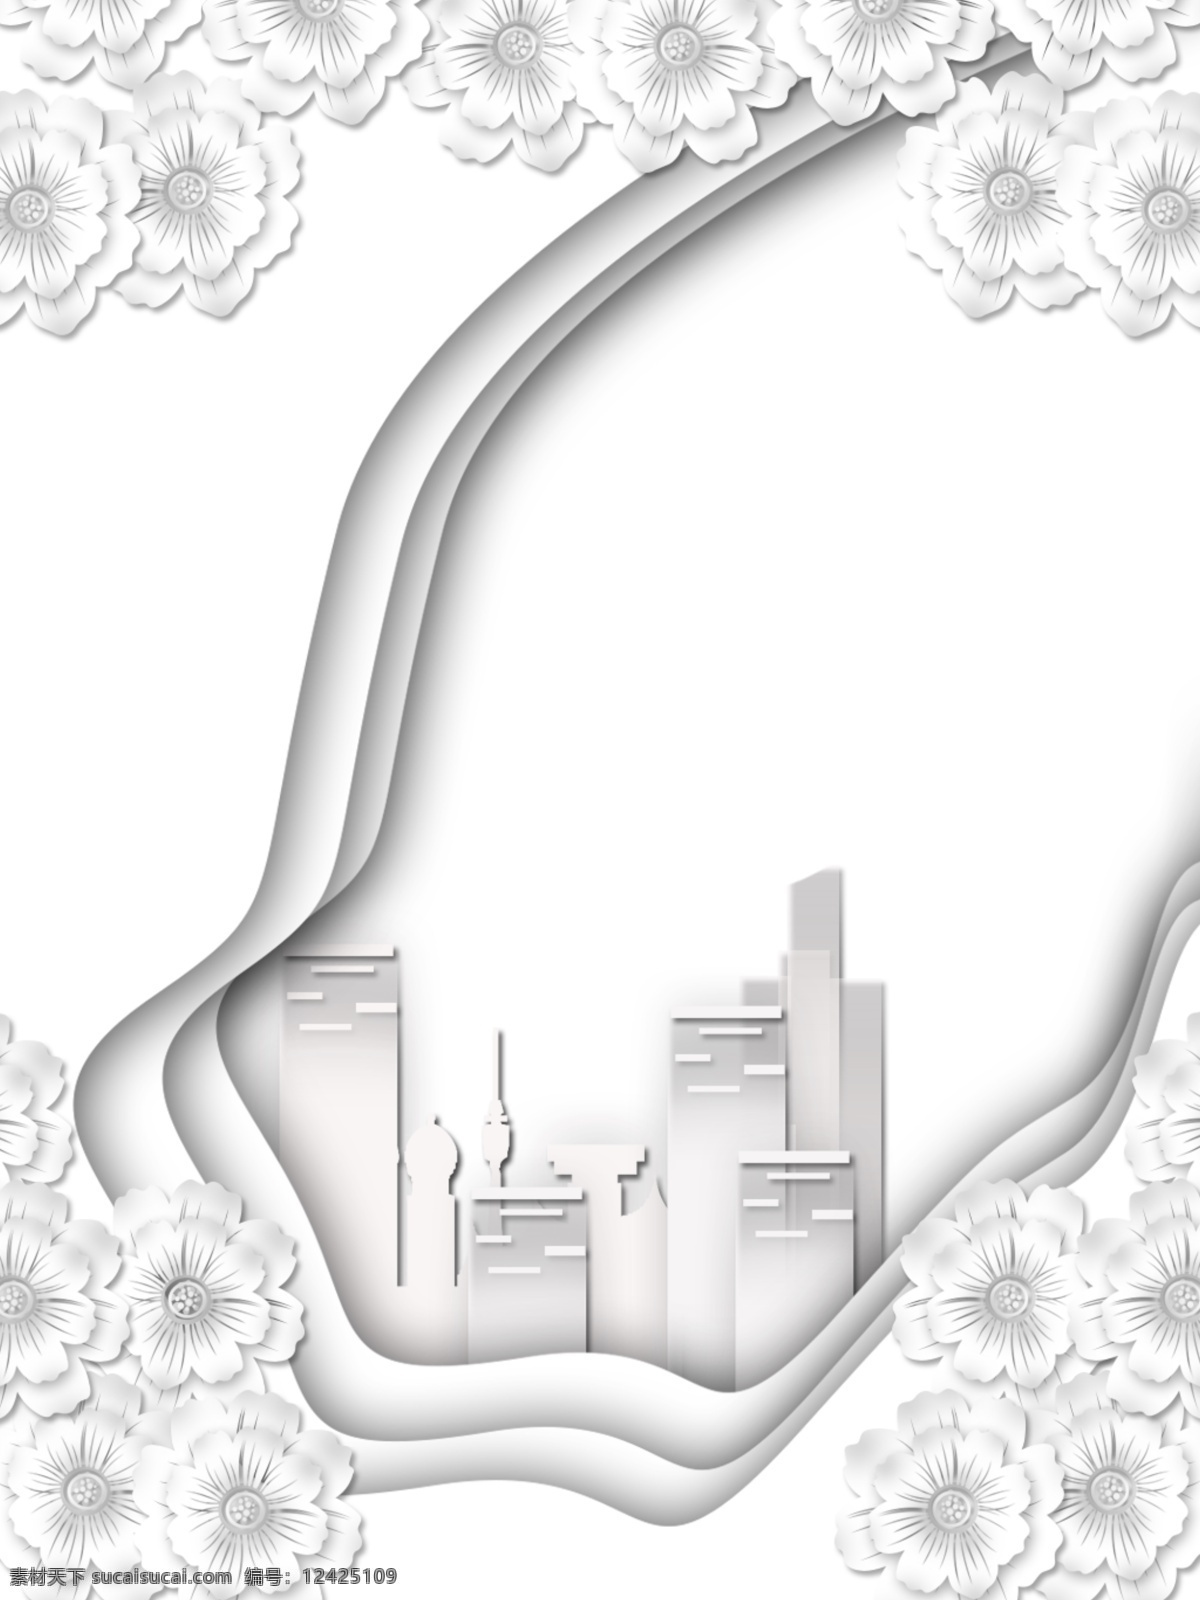 原创 纯 白色 立体 花型 现代 建筑 背景 白色立体花 立体花型 现代建筑 建筑背景素材 剪纸背景素材 原创纯白色